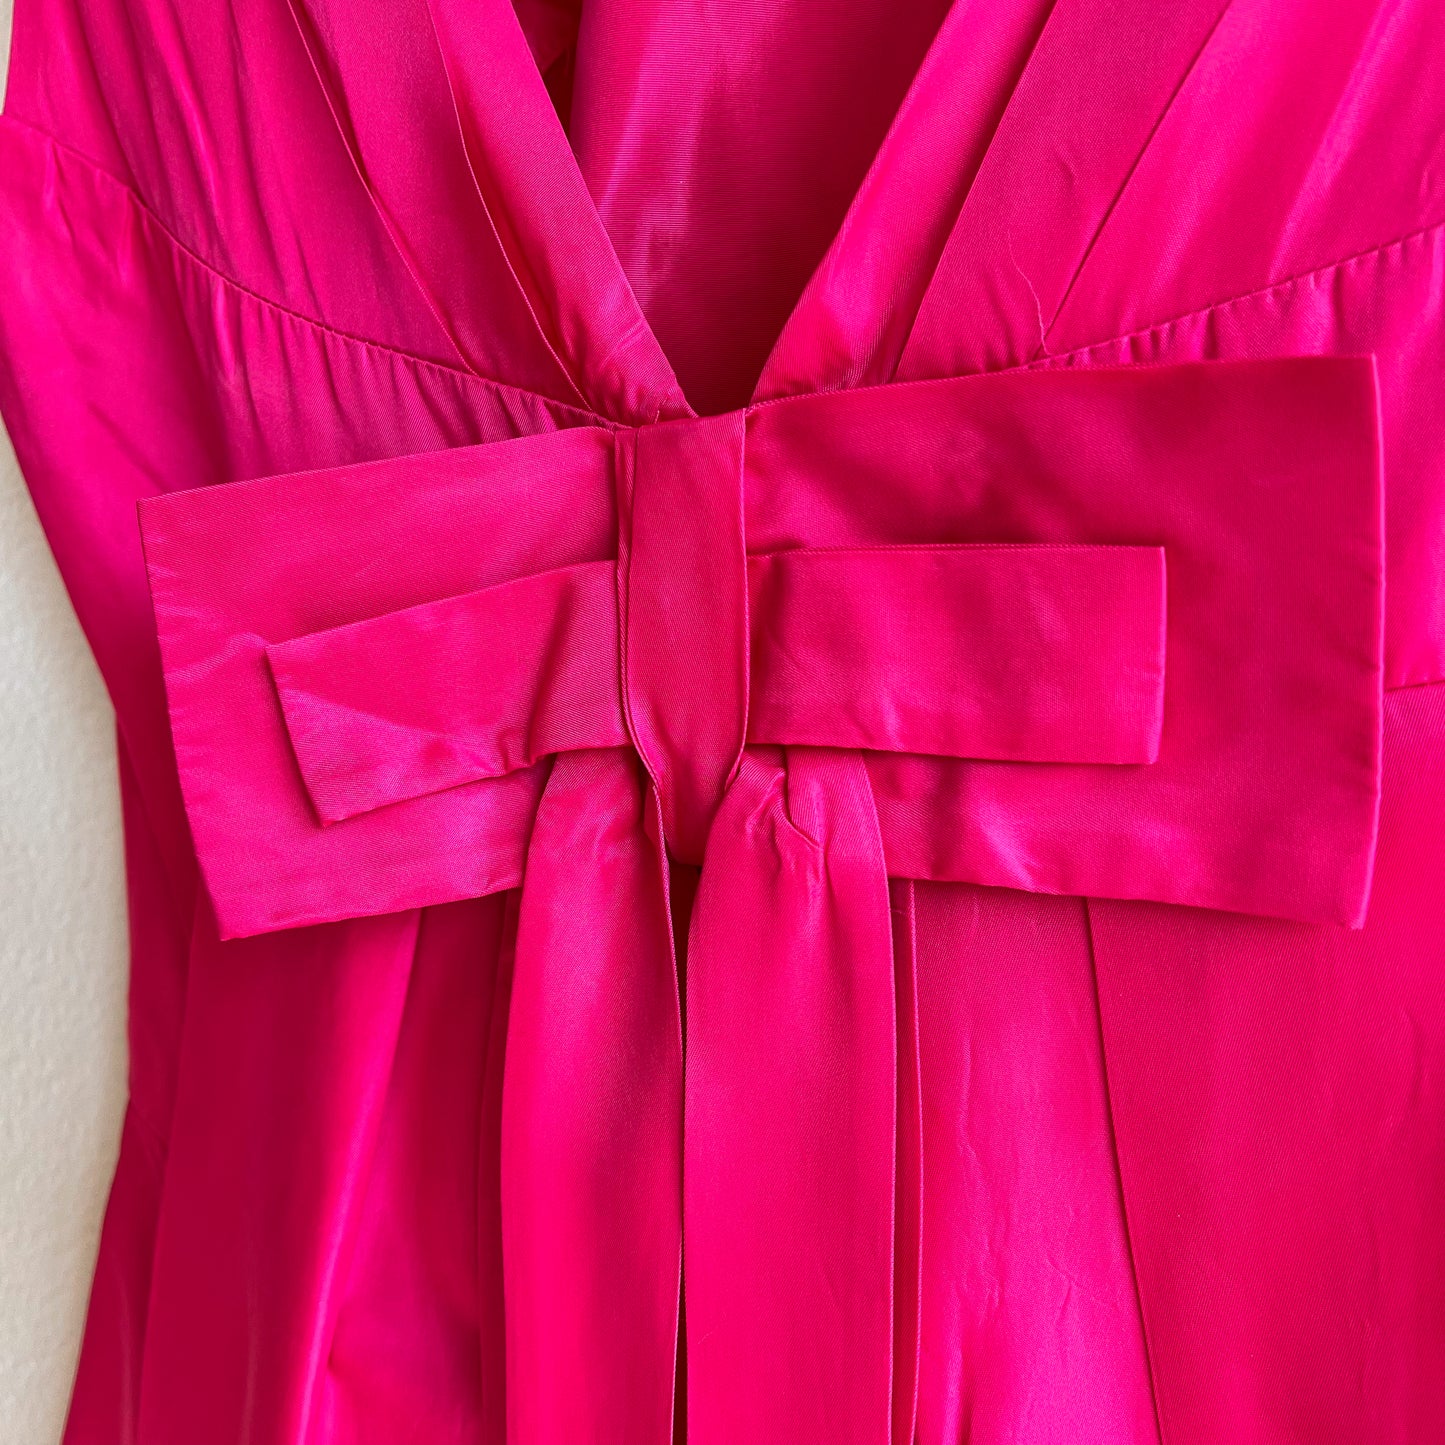 1960s Shocking Pink Emma Domb Dress (M/L)